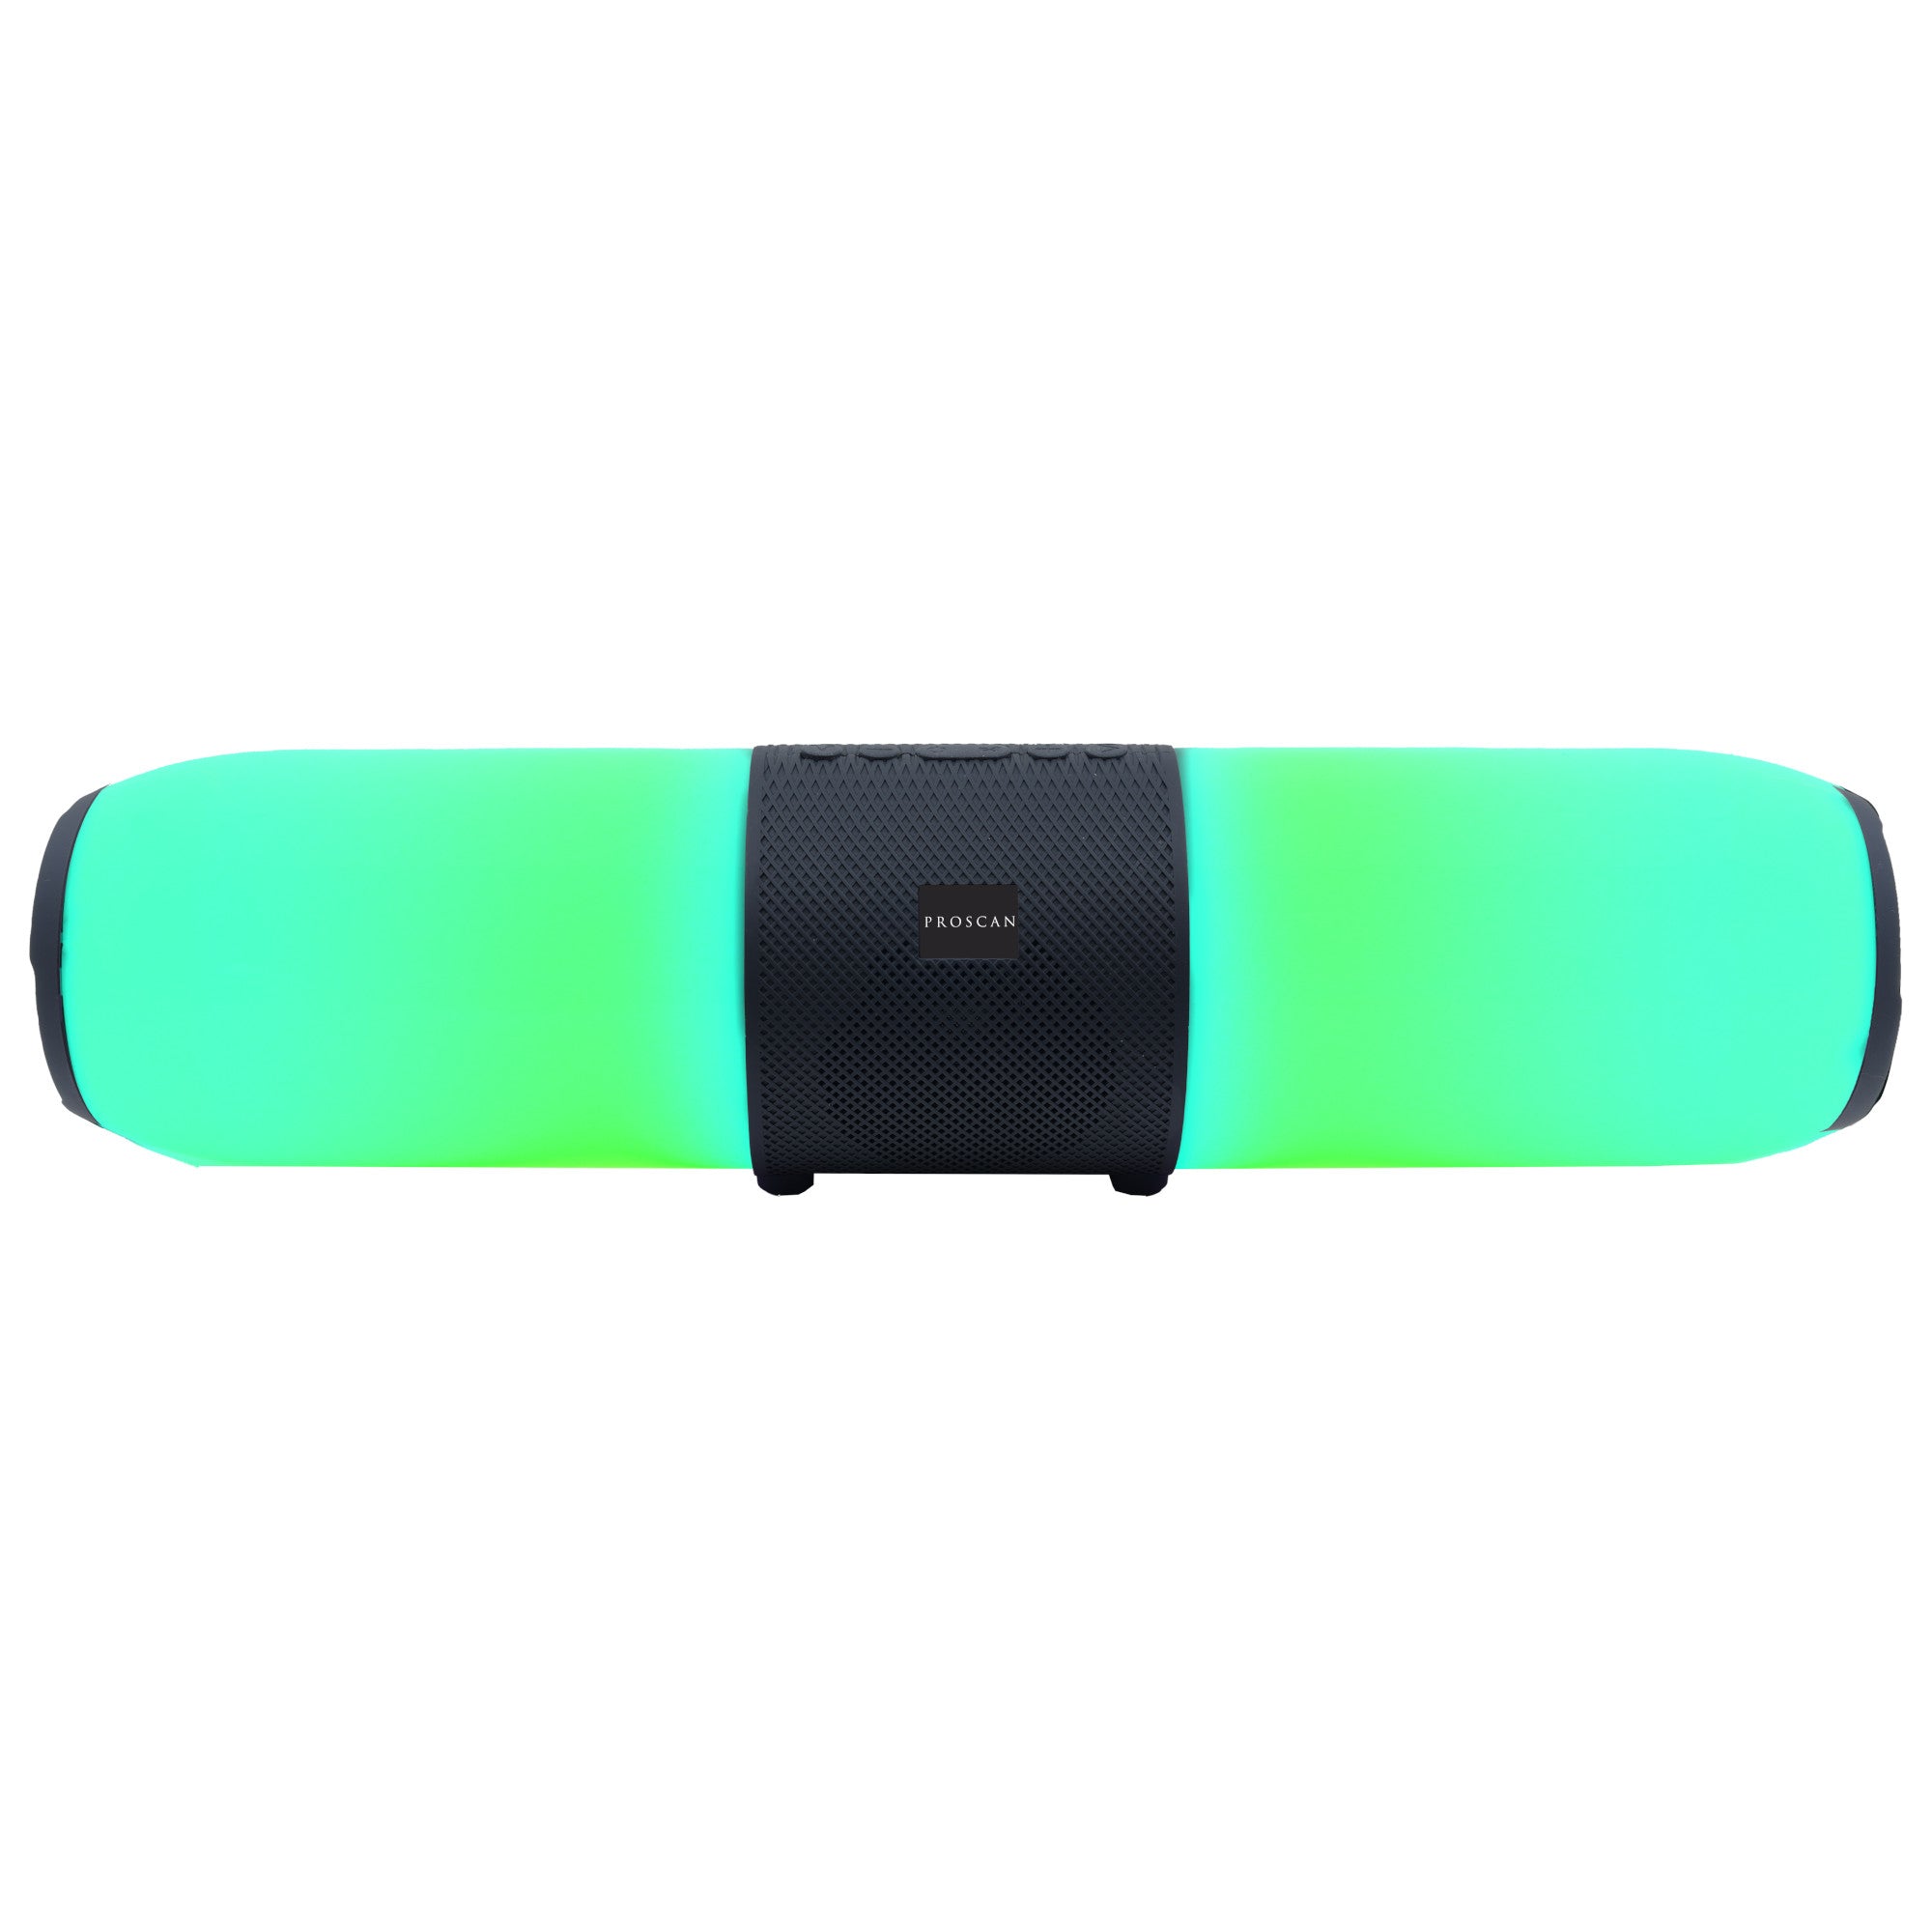 Proscan - Haut-parleur Bluetooth sans fil avec lumières LED. Colour: black, Fr